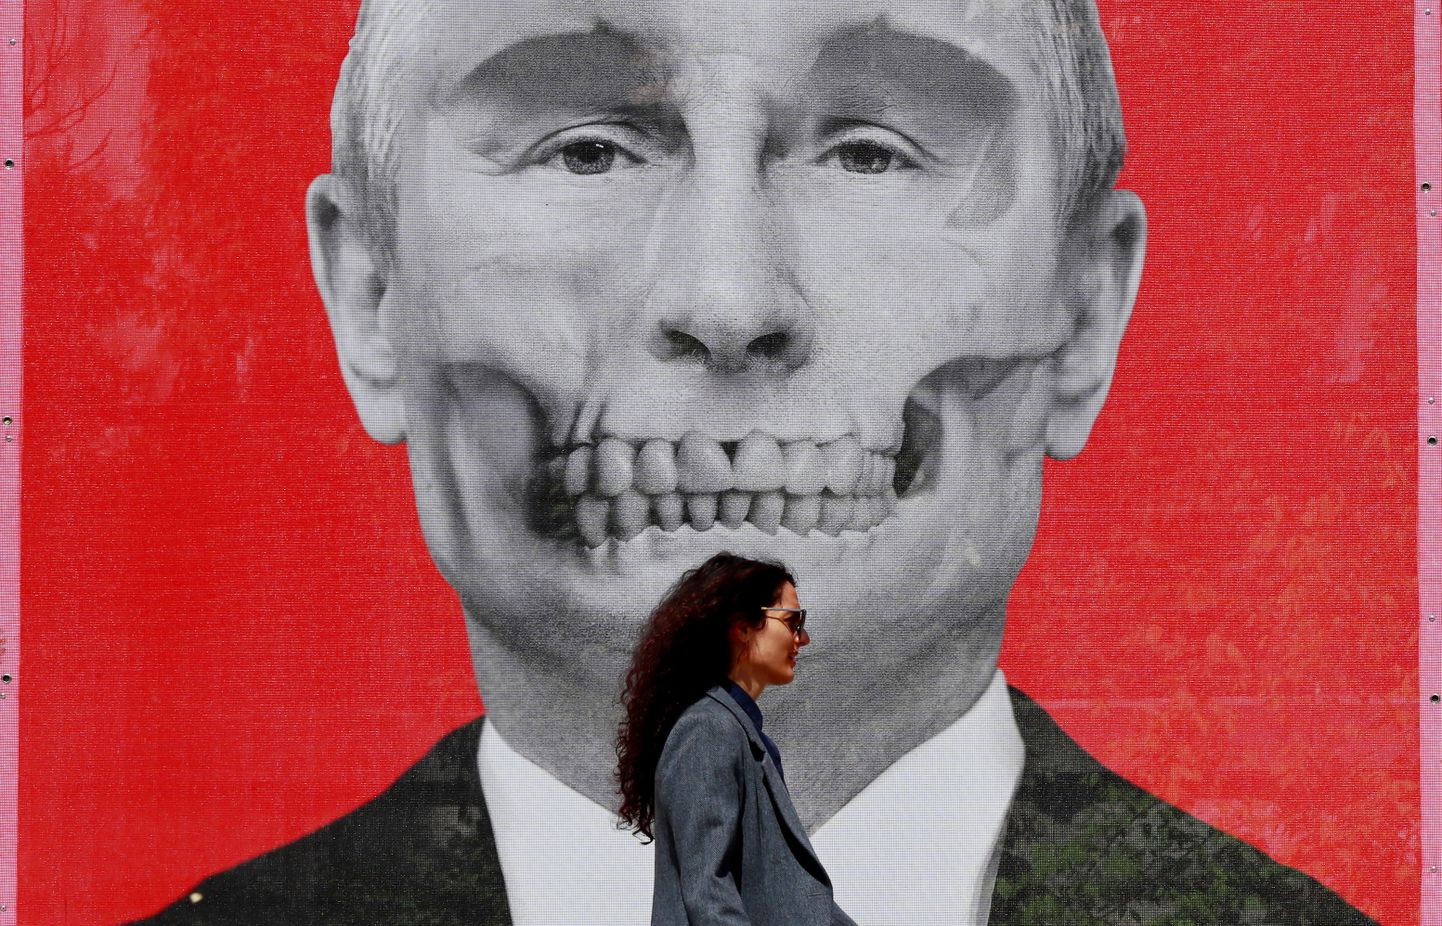 Sõjavastane tänavakunsti näitus «Eriline kunstiline operatsioon» Venemaa saatkonna läheduses Bukarestis, Rumeenias. Kunstiteosel on kujutatud Venemaa presidenti Vladimir Putinit. Foto on illustratiivne.